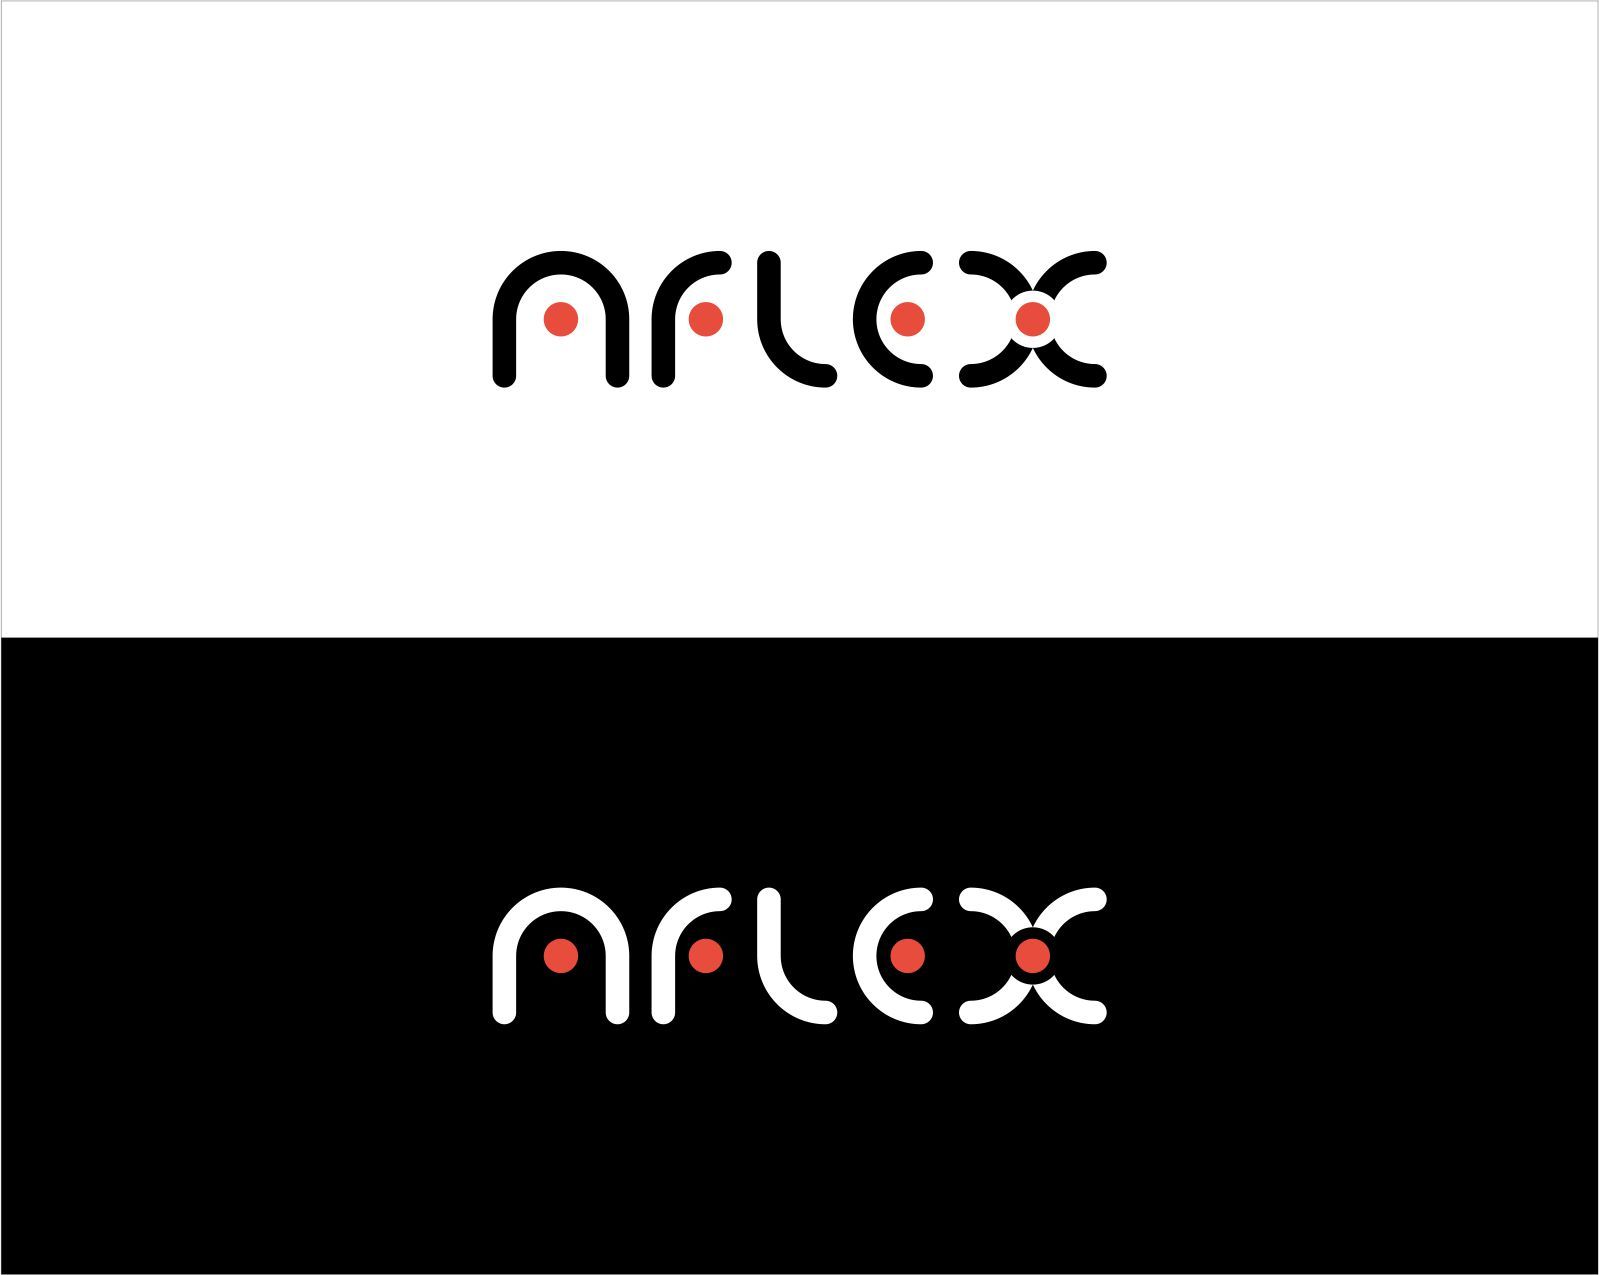 Лого и фирменный стиль для AFLEX - дизайнер georgian